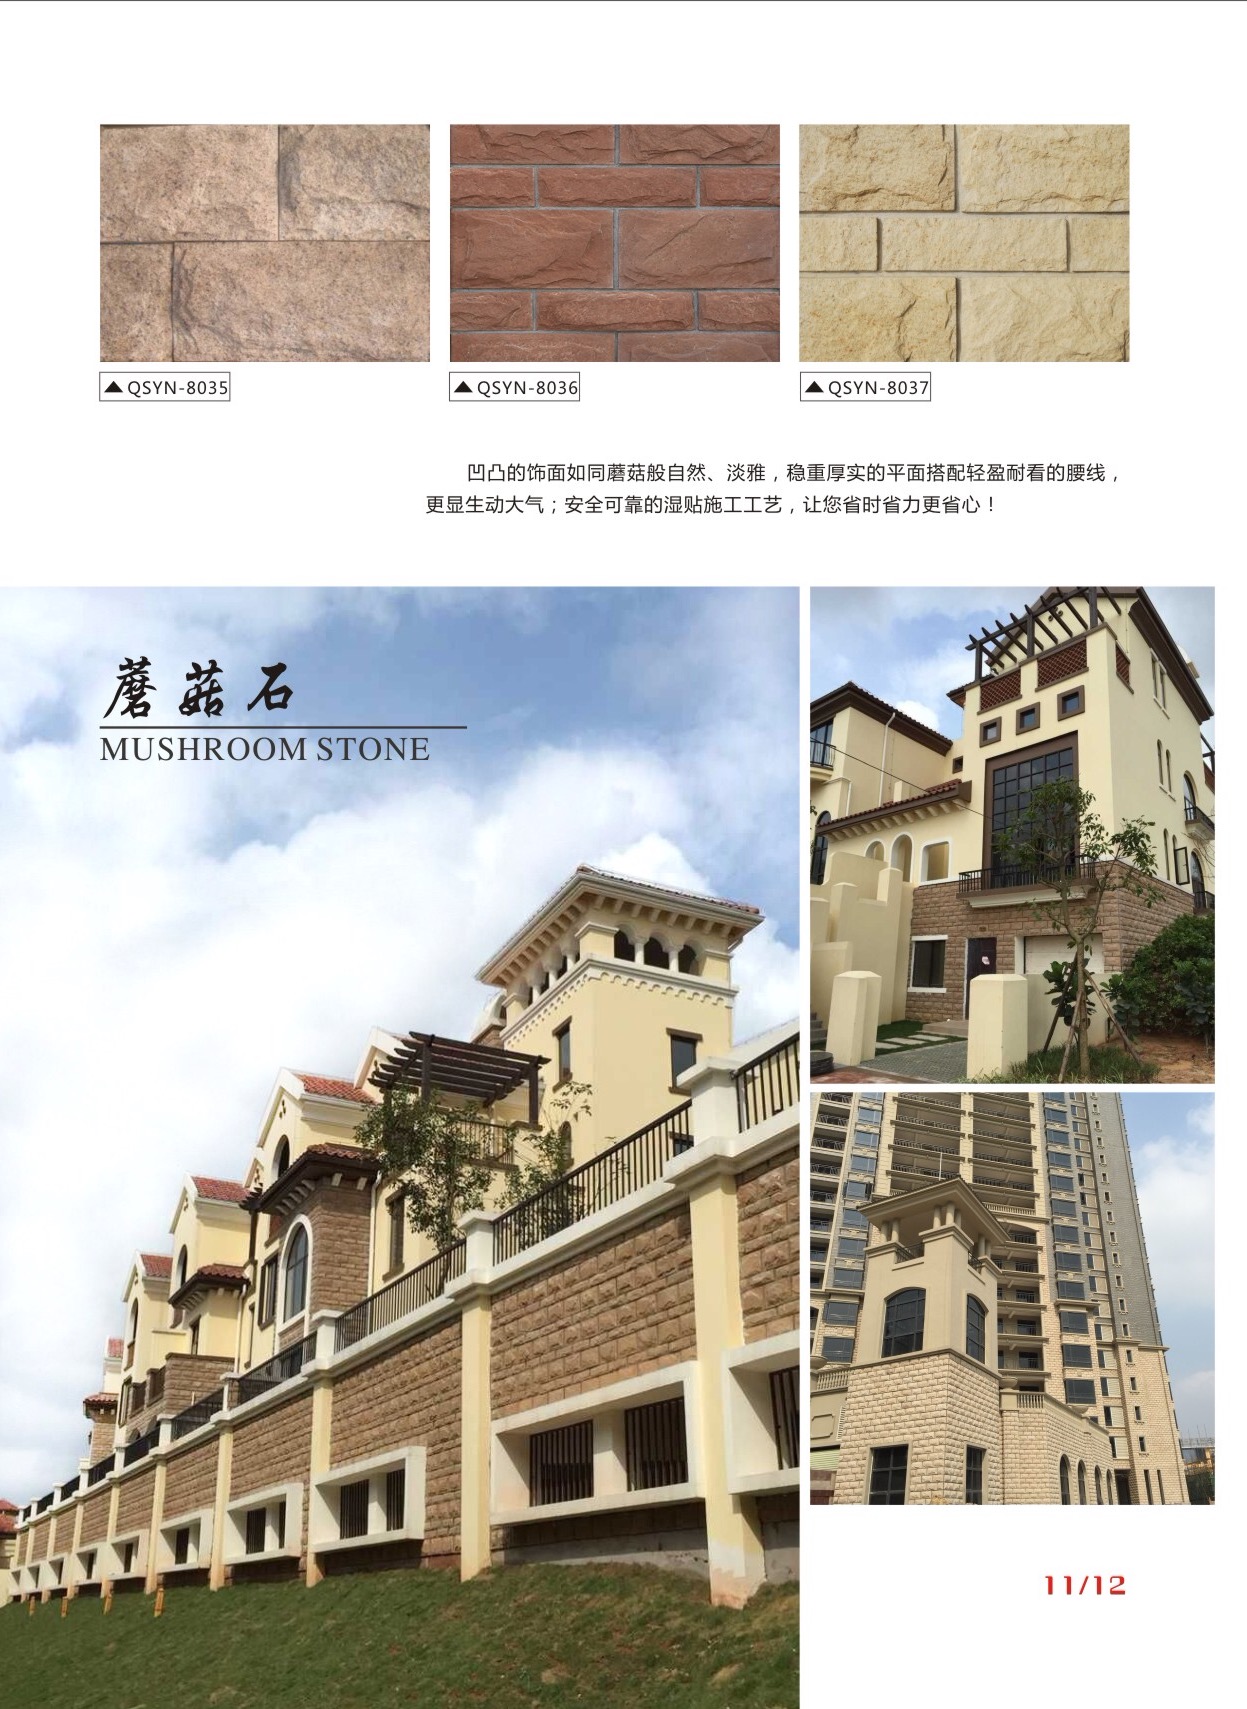 湖北襄樊园林公园文化砖哪里有，襄樊仿古砖城堡石厂家生产批发价格